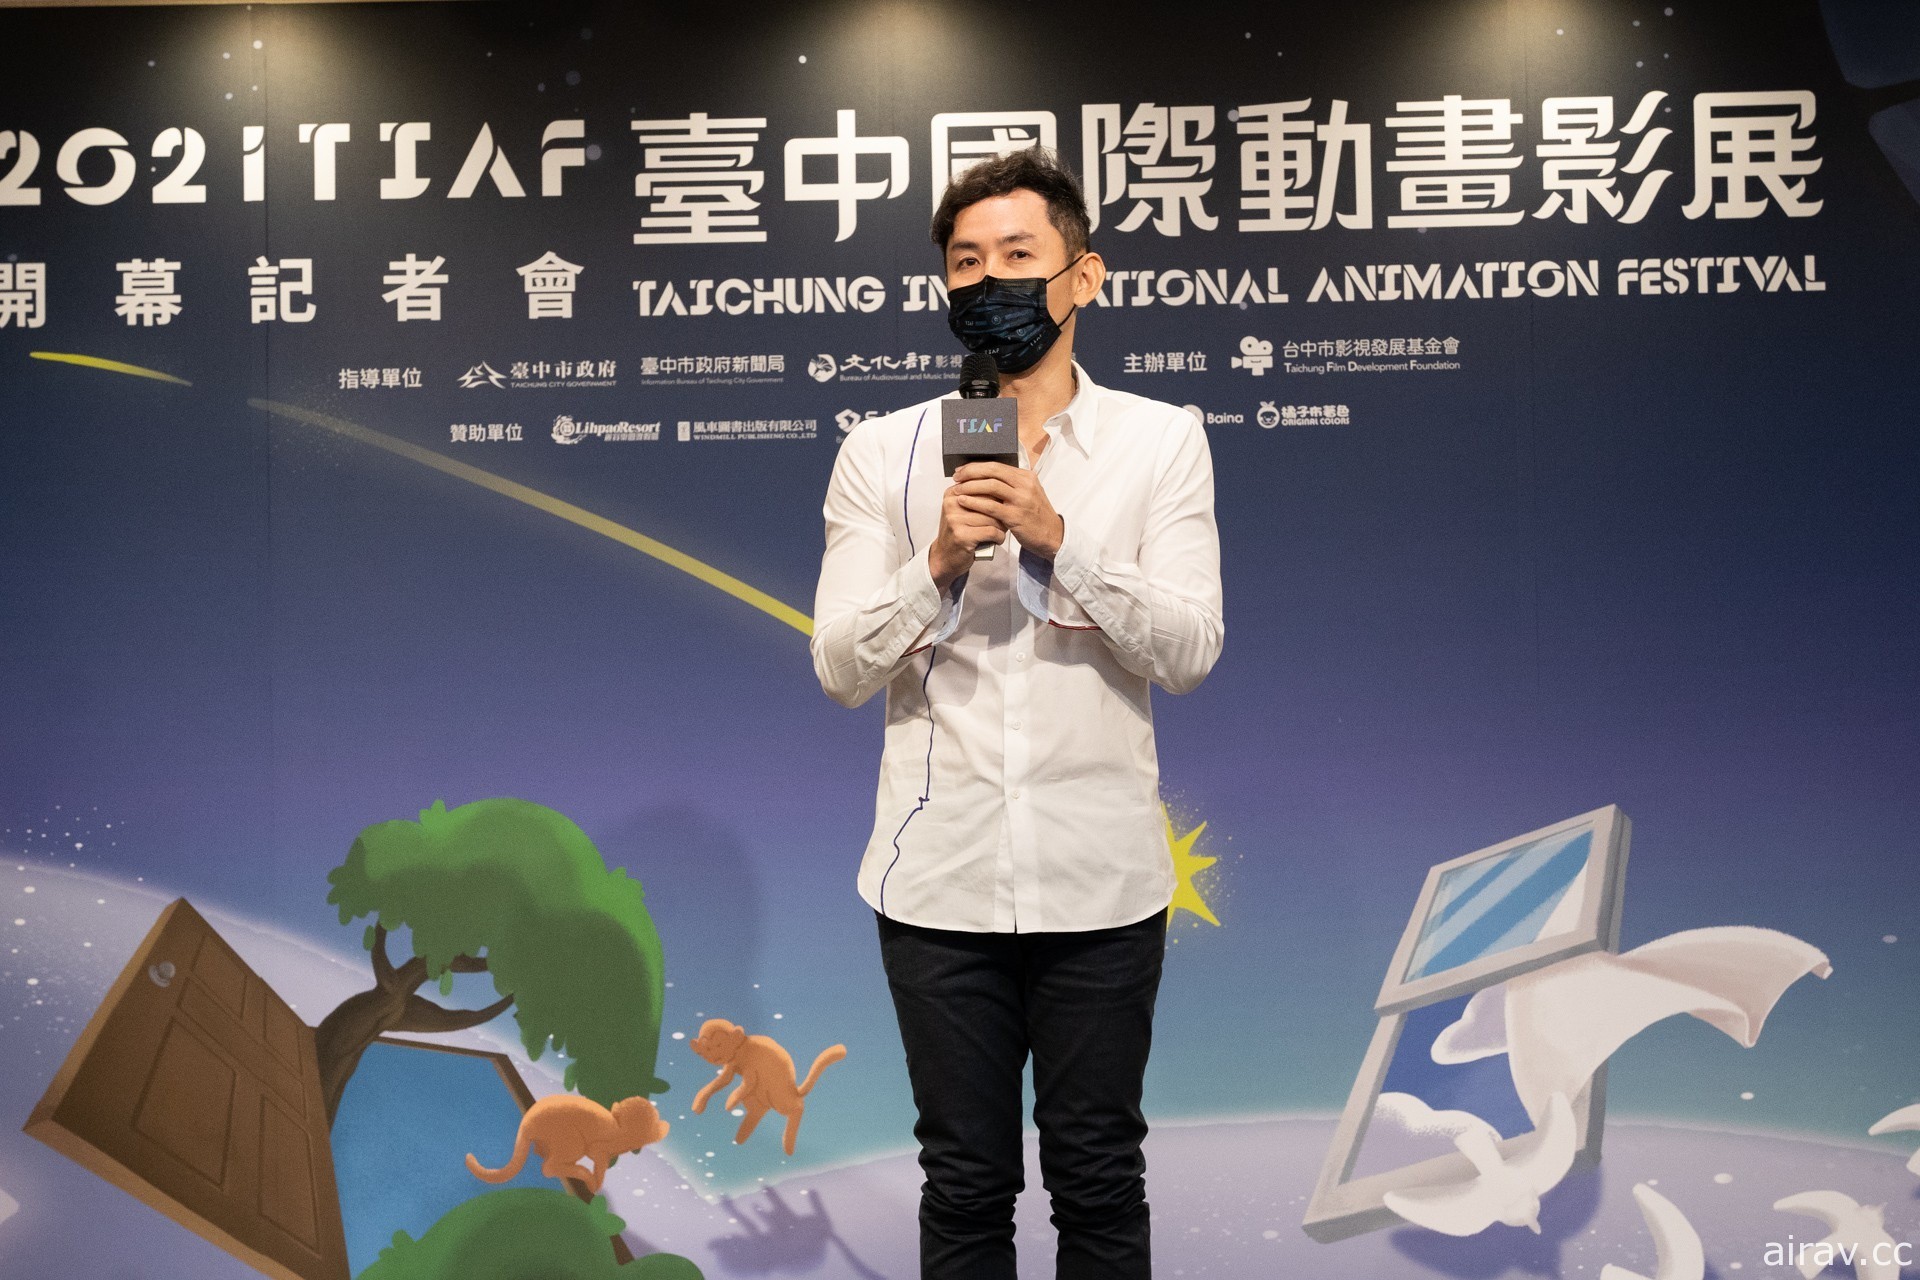 2021 台中国际动画影展开幕 放映 156 部各国精采电影